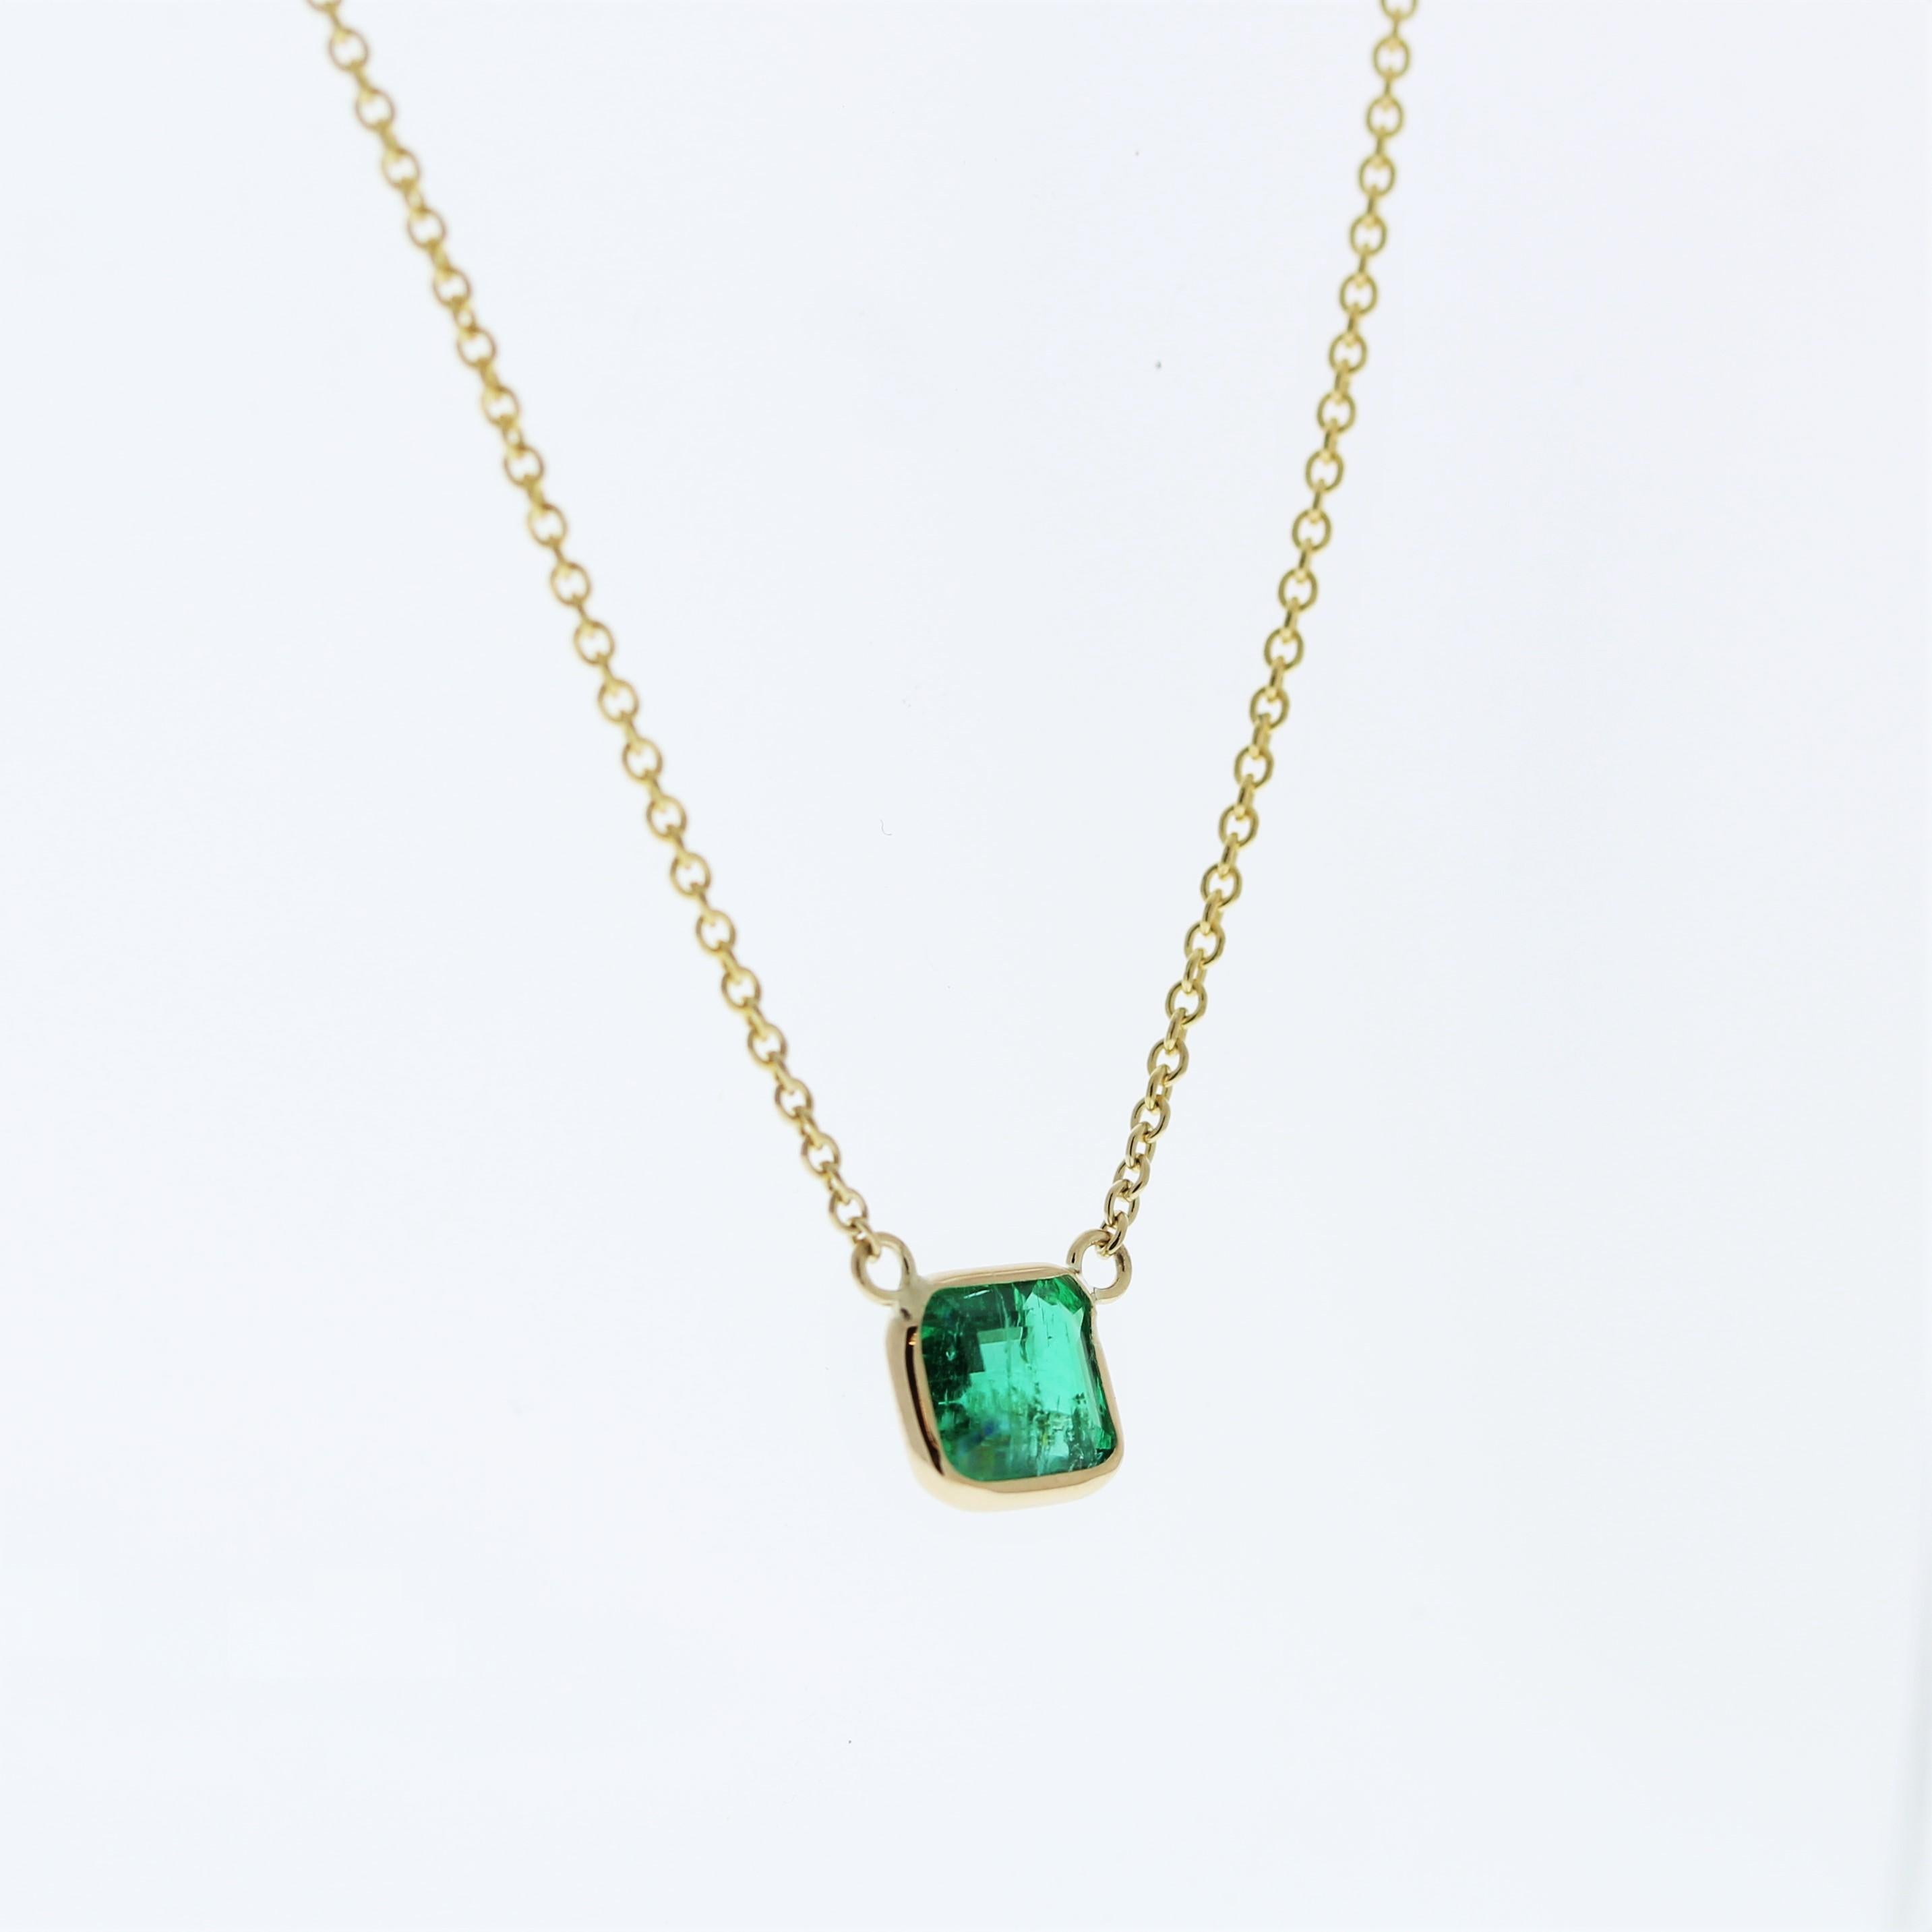 Die Halskette besteht aus einem grünen Smaragd im Asscher-Schliff von 1,04 Karat, der in einem Anhänger oder einer Fassung aus 14 Karat Gelbgold gefasst ist. Der markante Asscher-Schliff und die leuchtend grüne Farbe des Smaragds in der